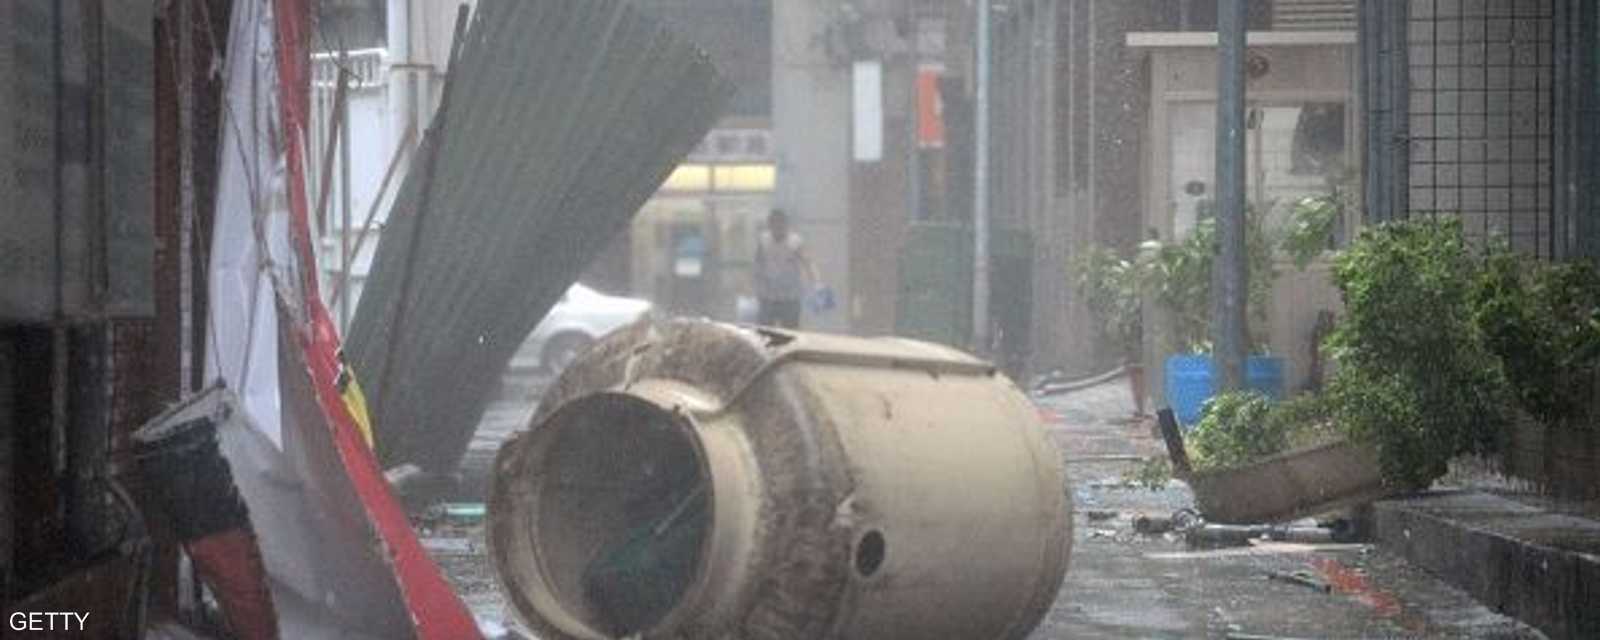 اجتاح الإعصار سوديلور تايوان في ساعة مبكرة من صباح السبت وآثار فوضى عارمة 